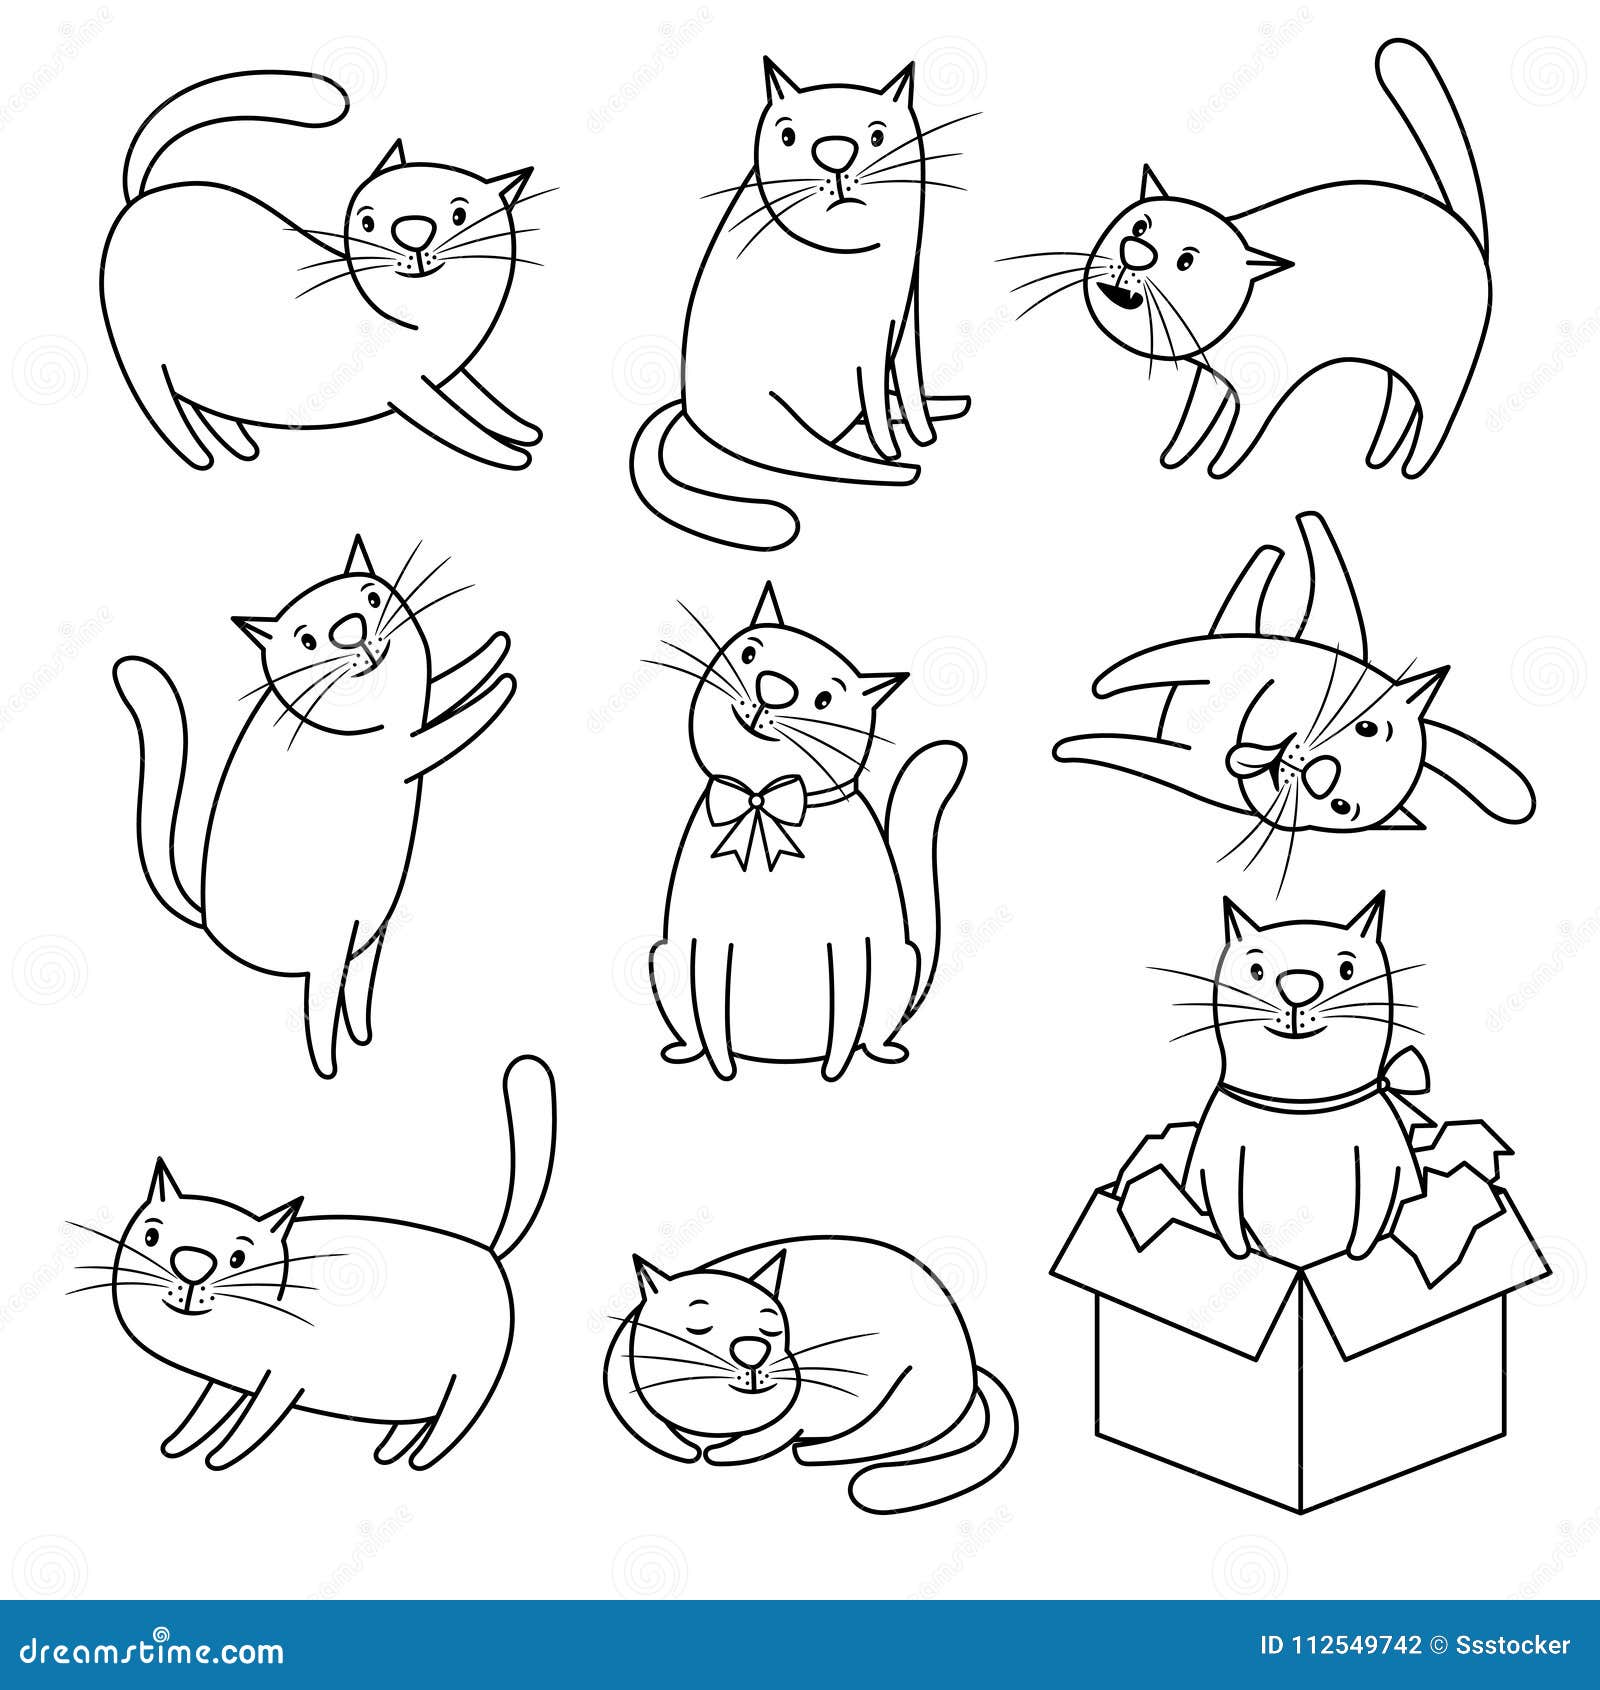 Vetores de Doodle De Gato Coleção De Ícones De Gatos Mão Desenhada